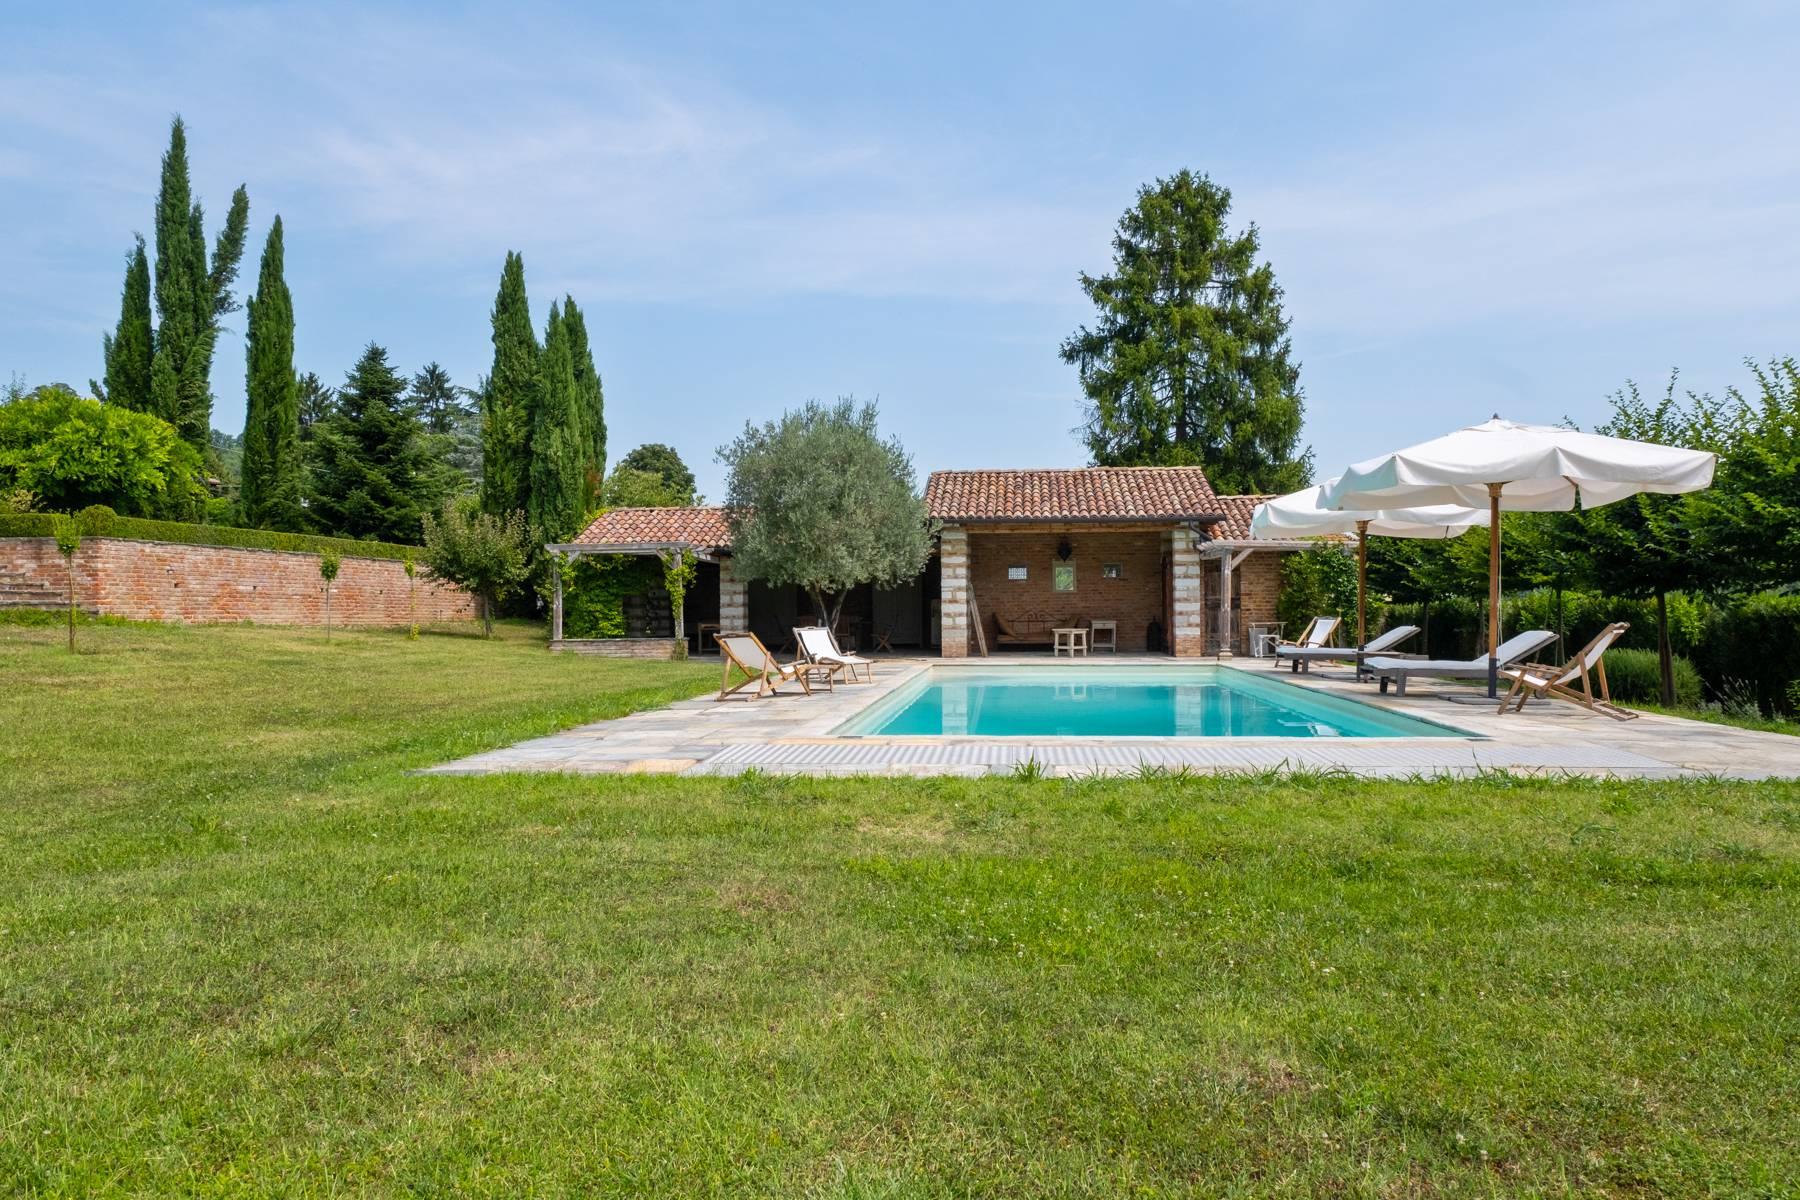 Affascinante casale con piscina nel verde delle colline del Monferrato - 27